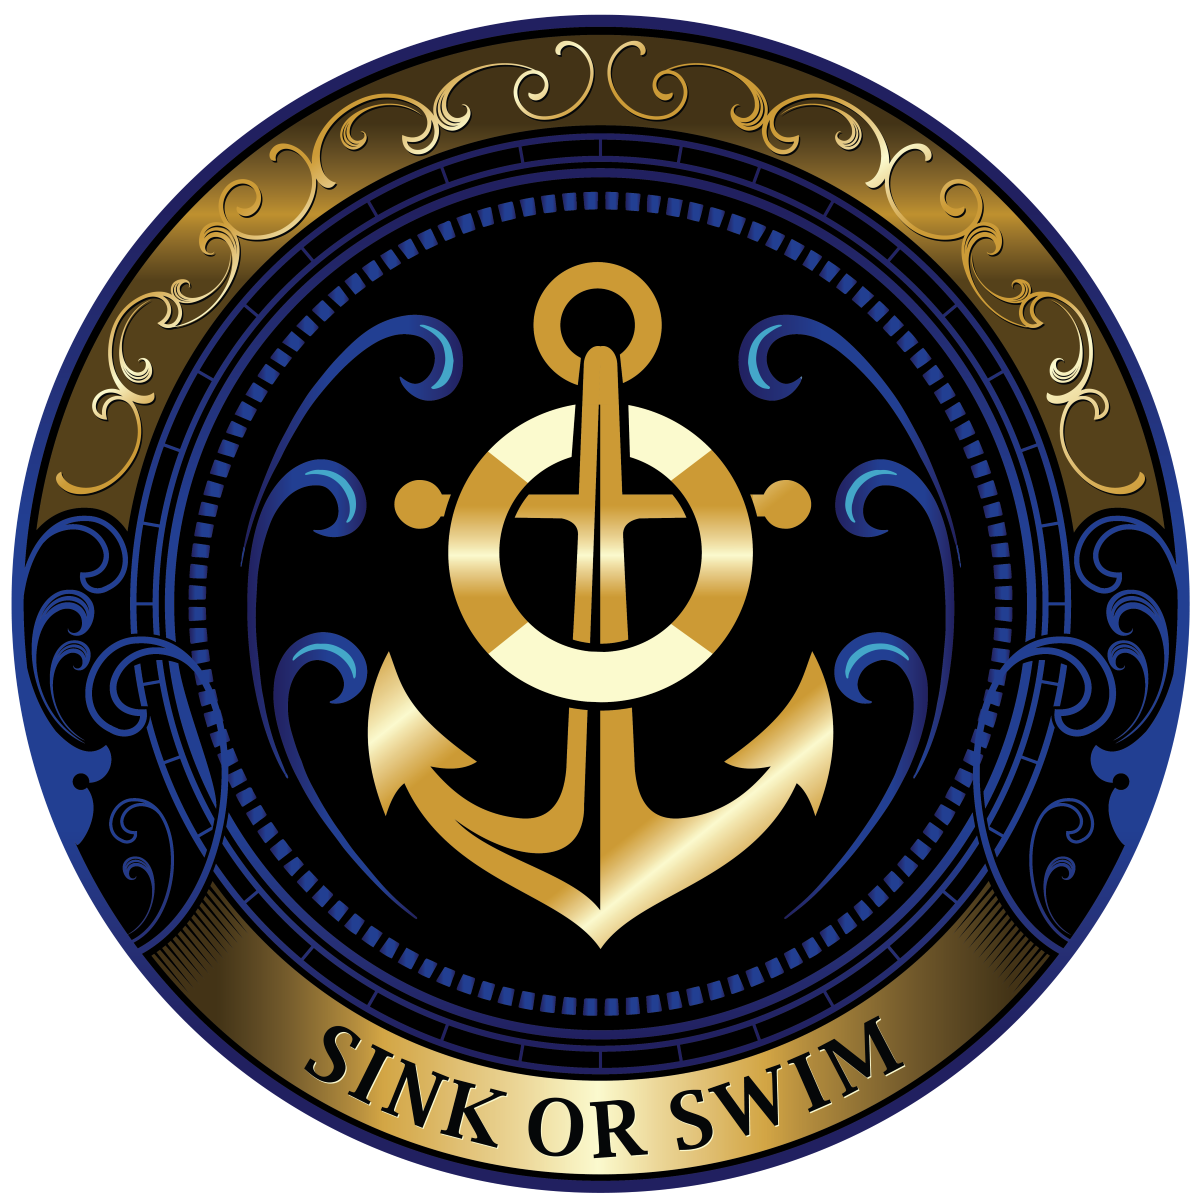 SINK or SWIM TATTOOS – Sink Or Swim Tattoos